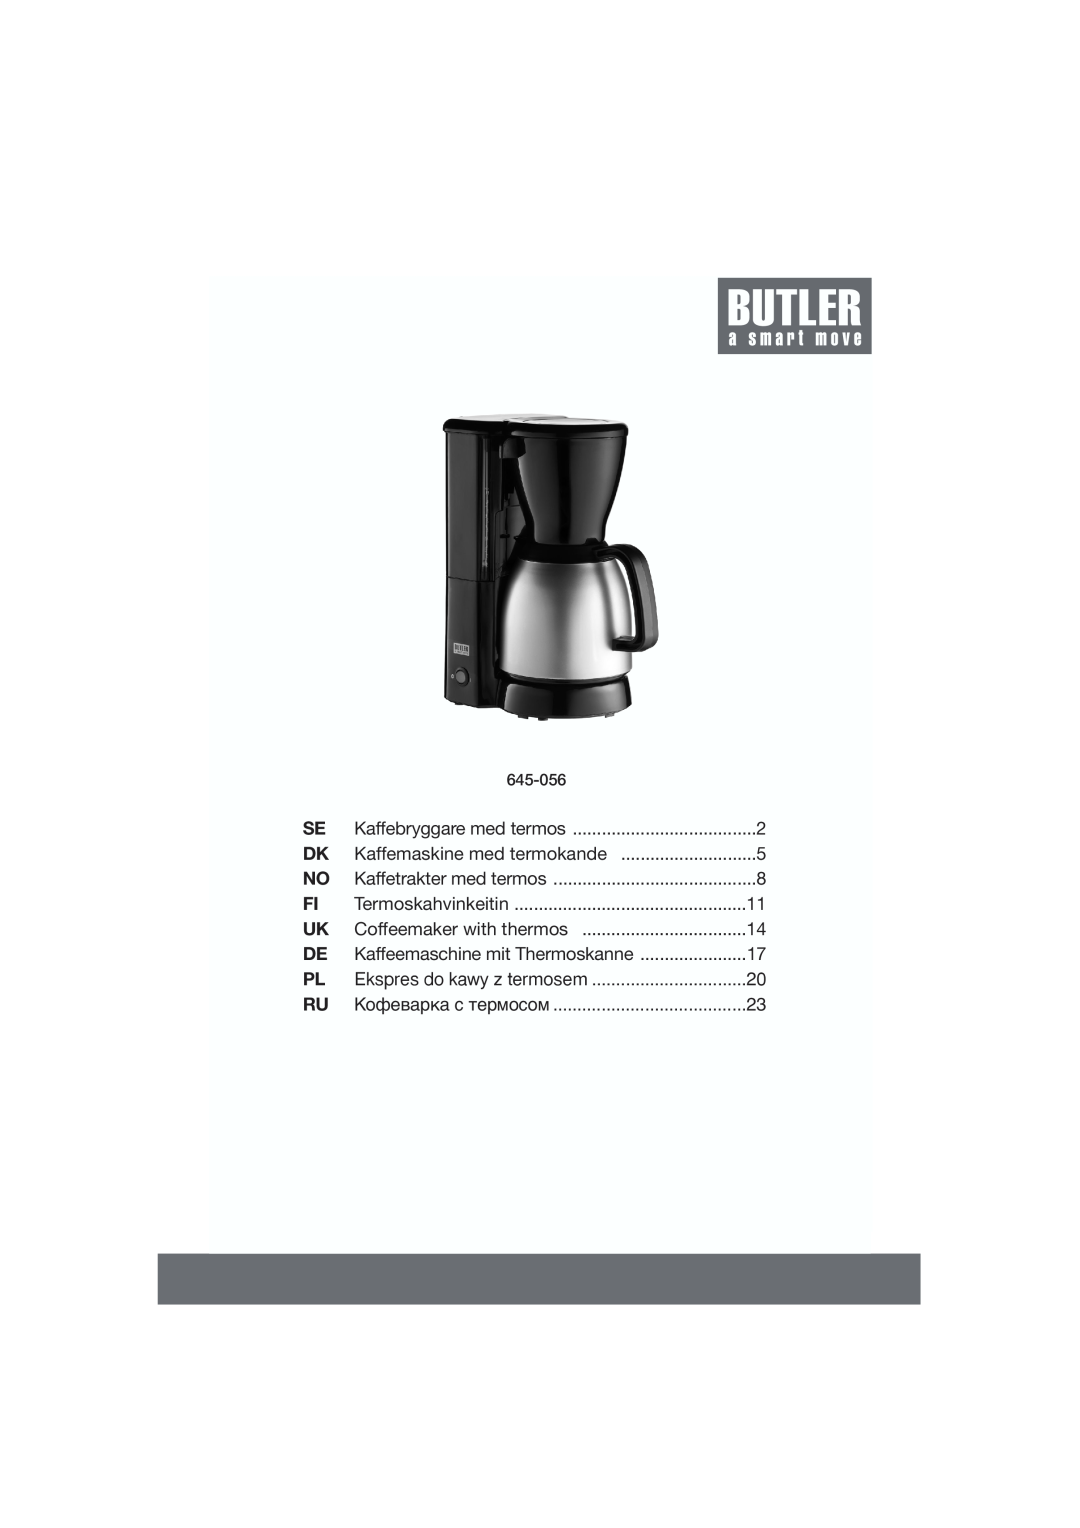 Butler 645-056 manual Kaffebryggare med termos, Kaffemaskine med termokande, Kaffetrakter med termos, Termoskahvinkeitin 